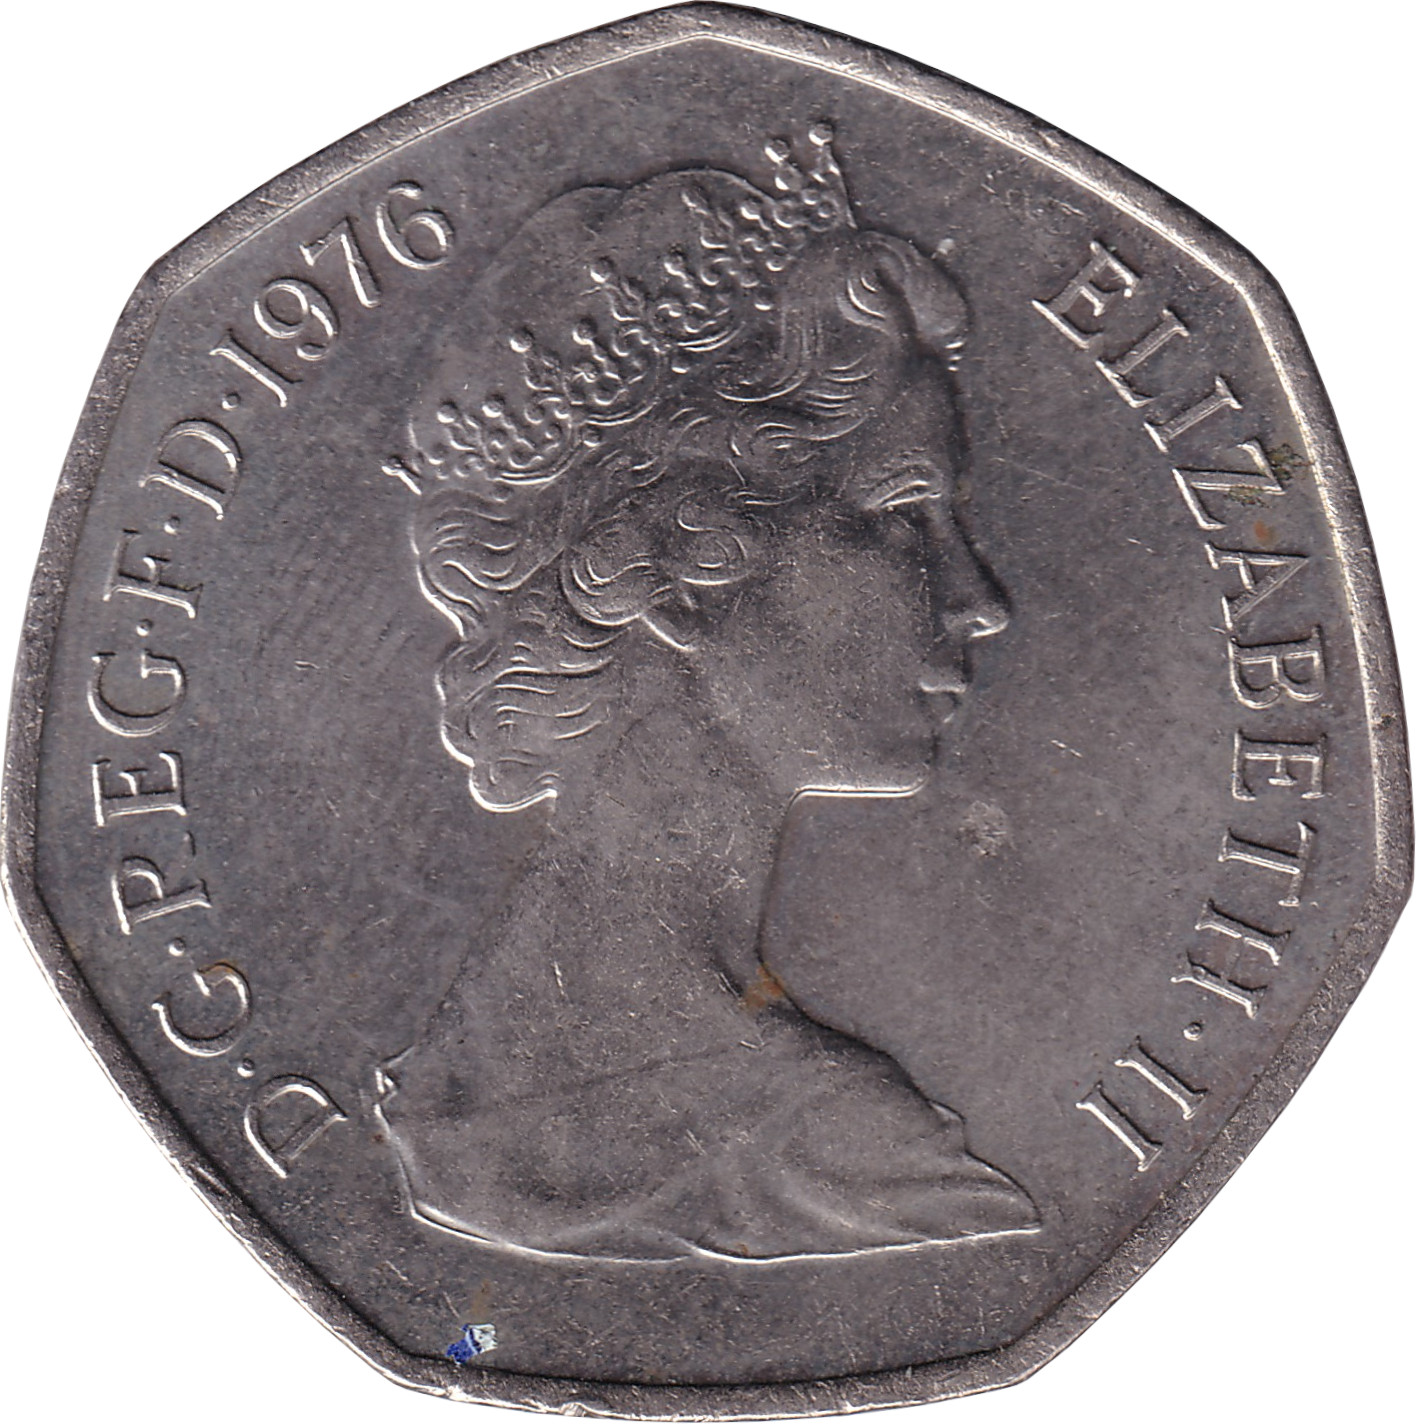 50 pence - Elizabeth II - Buste jeune